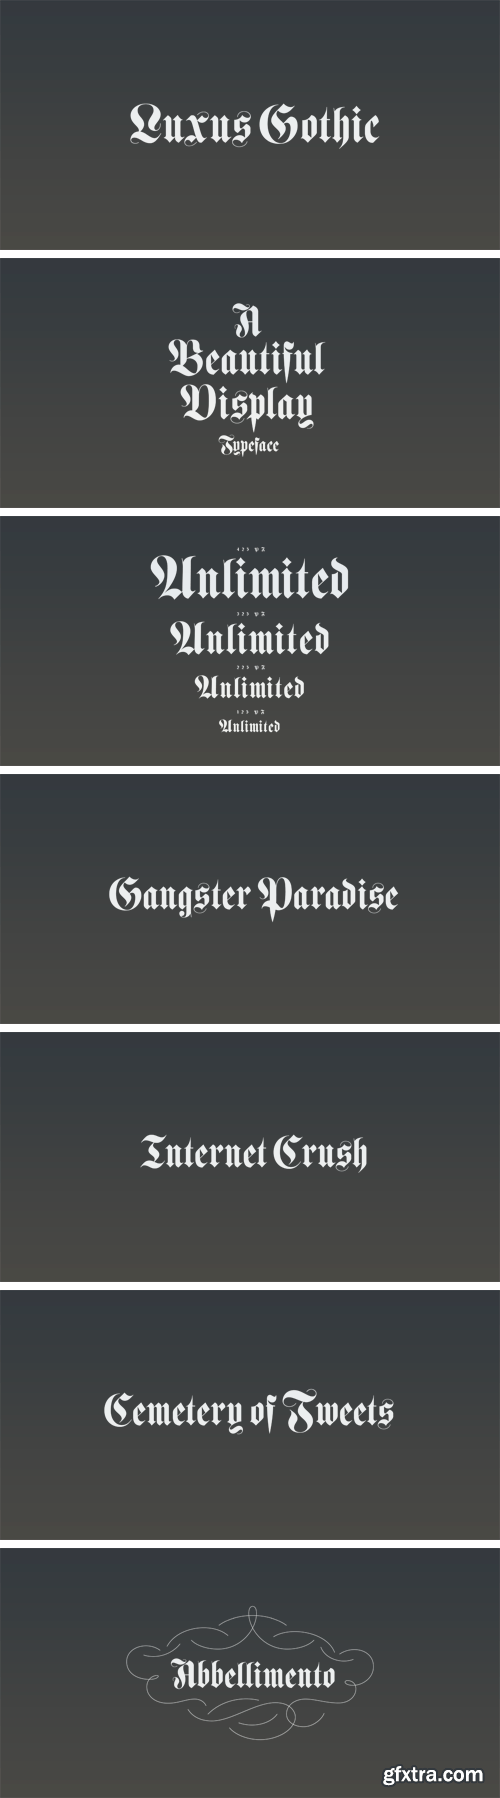 Luxus Gothic Typeface